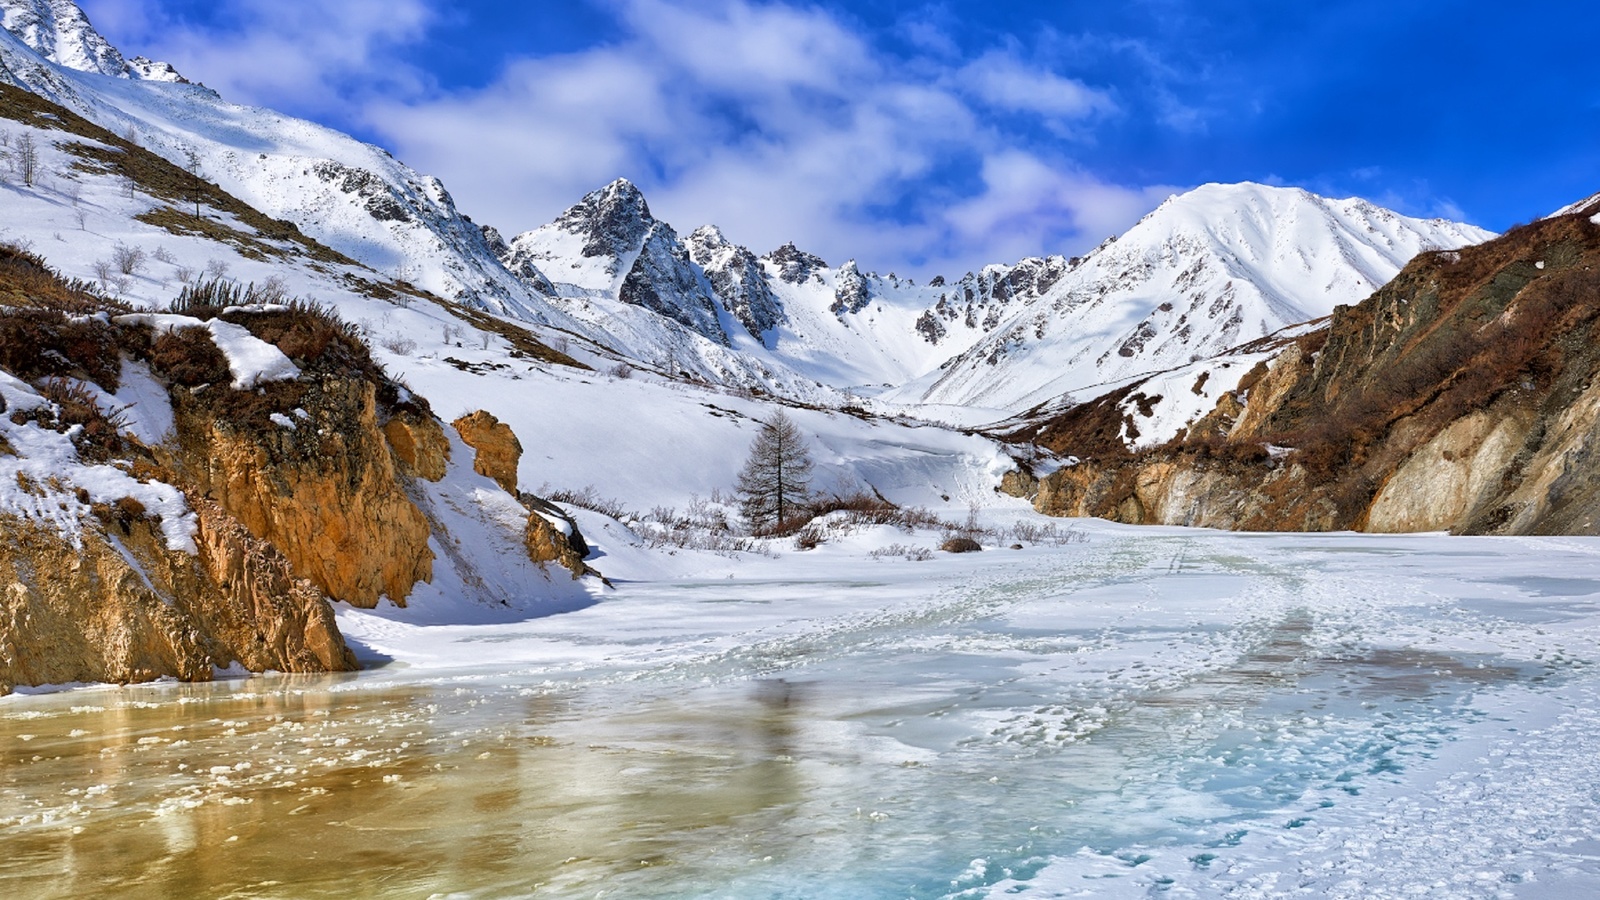 река, лед, горы, снег, небо, белый иркут, пик конституции, by zhaubasar